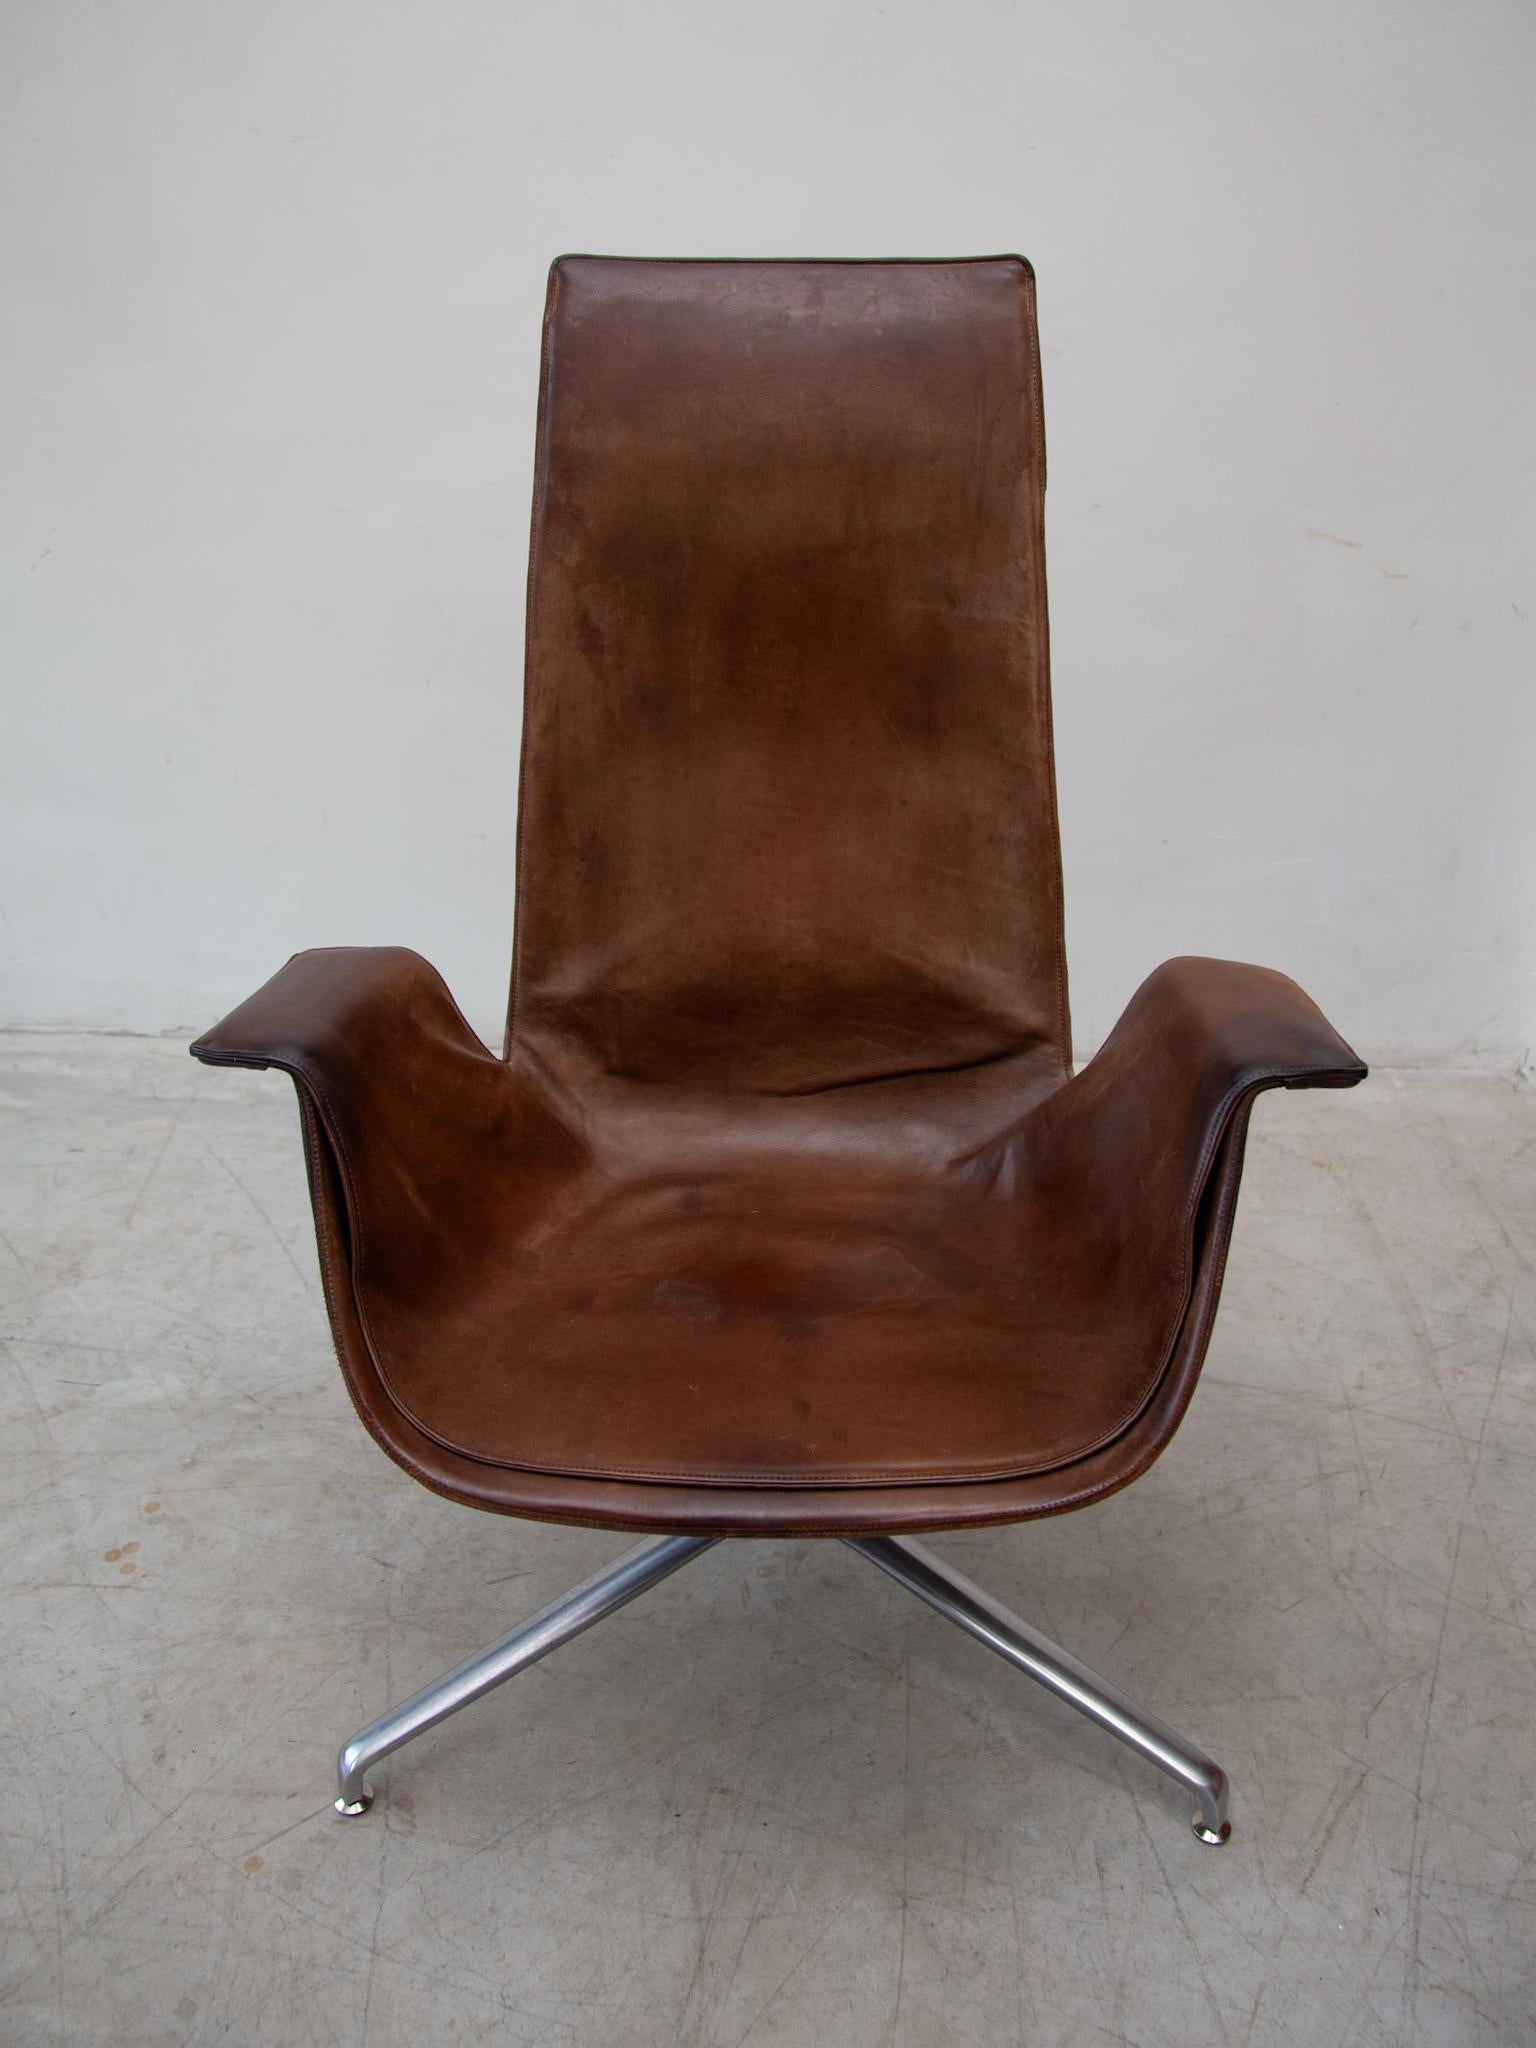 Sculpture intemporelle de la modernité, en cuir brun chocolat, la belle chaise de salon FK 6725 conçue en 1964, le modèle a reçu un prix fédéral de la bonne forme. En tant que chaise longue de réunion, conçue par Preben Fabricius et Jörgen Kastholm,